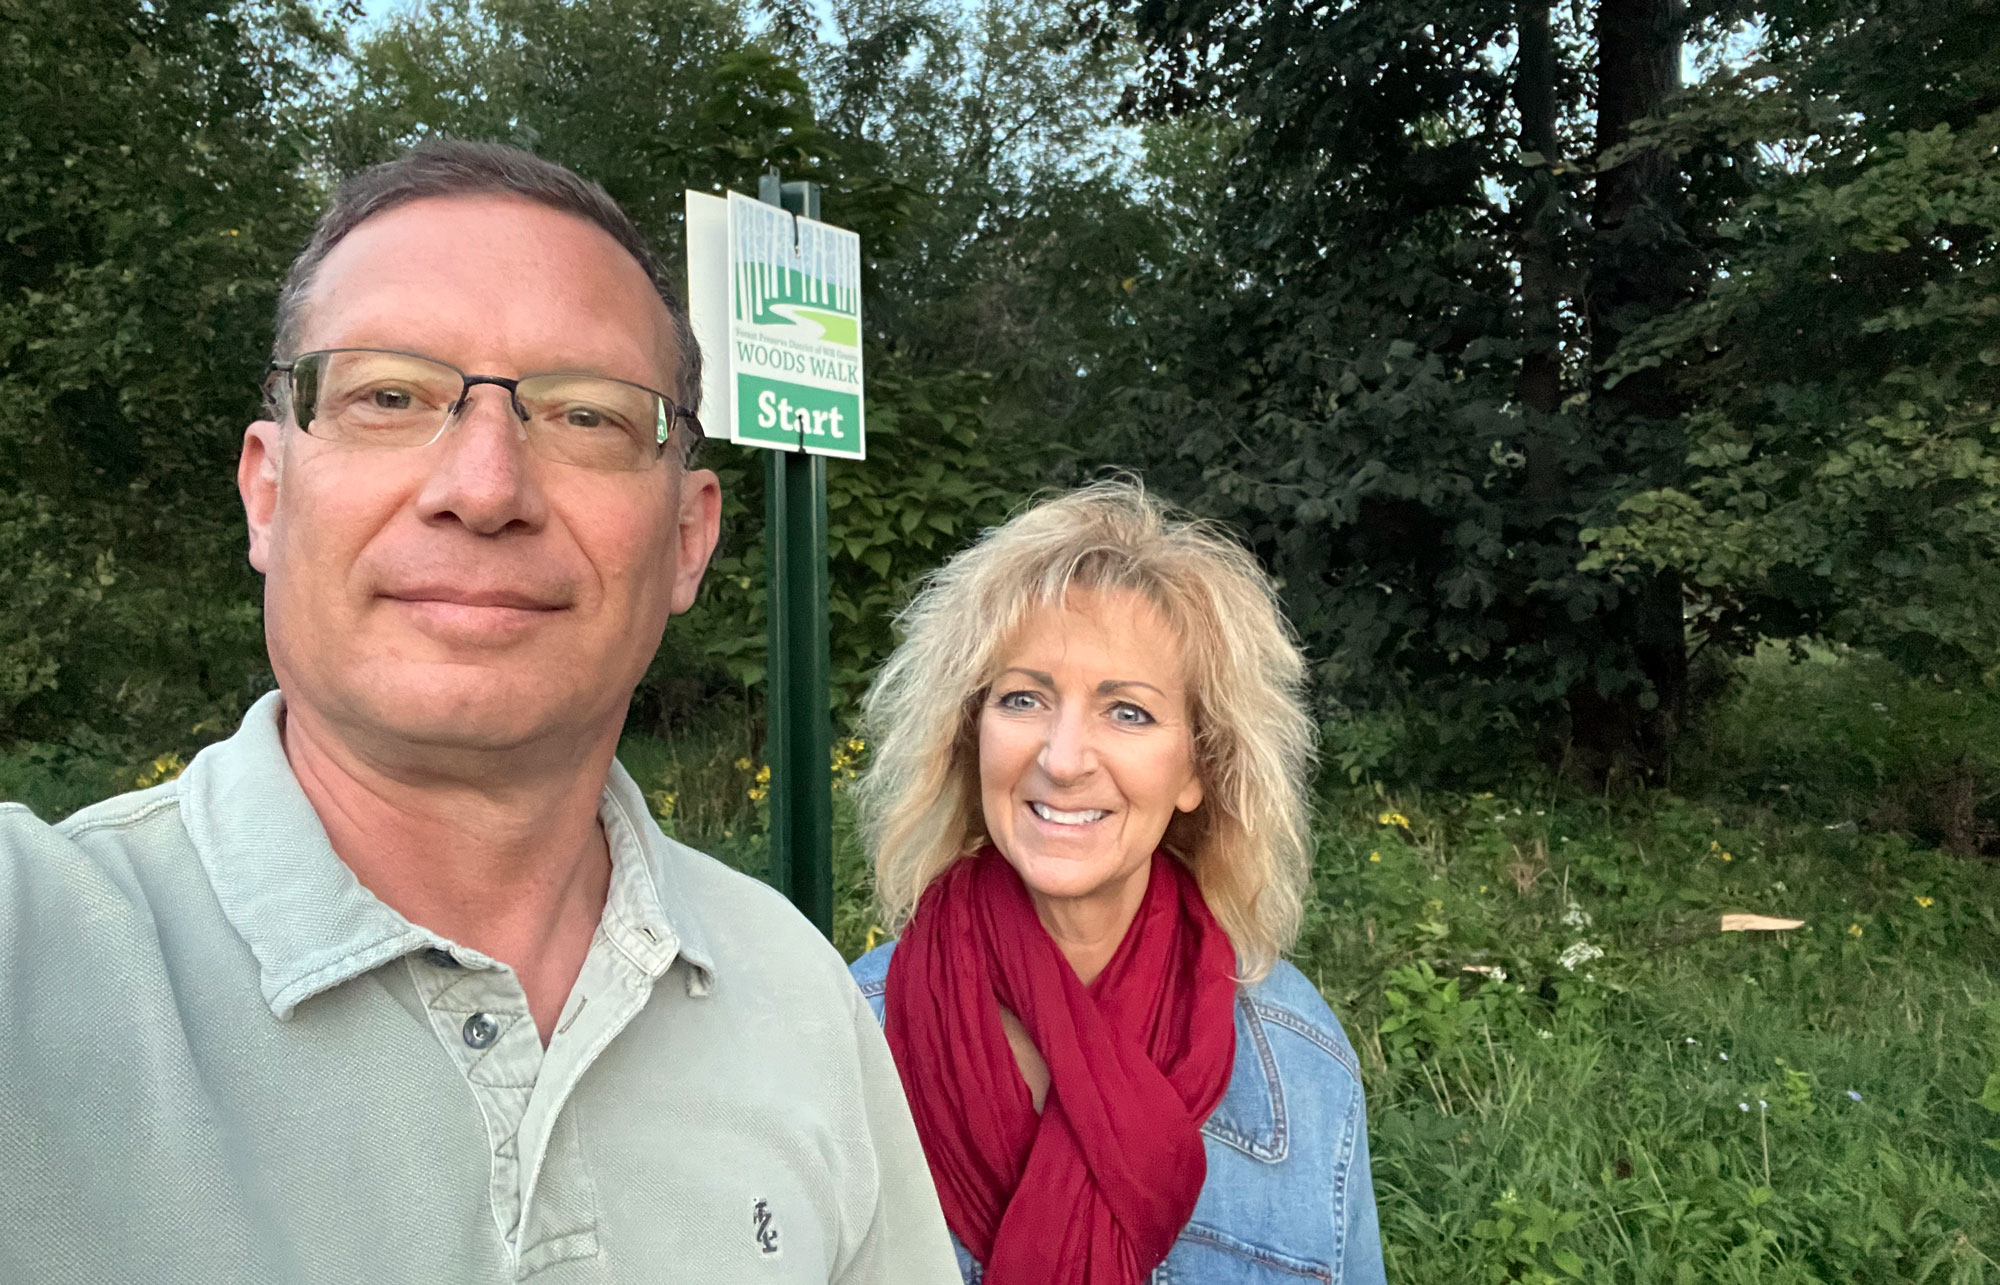 A man and woman take a selfie along a trail.